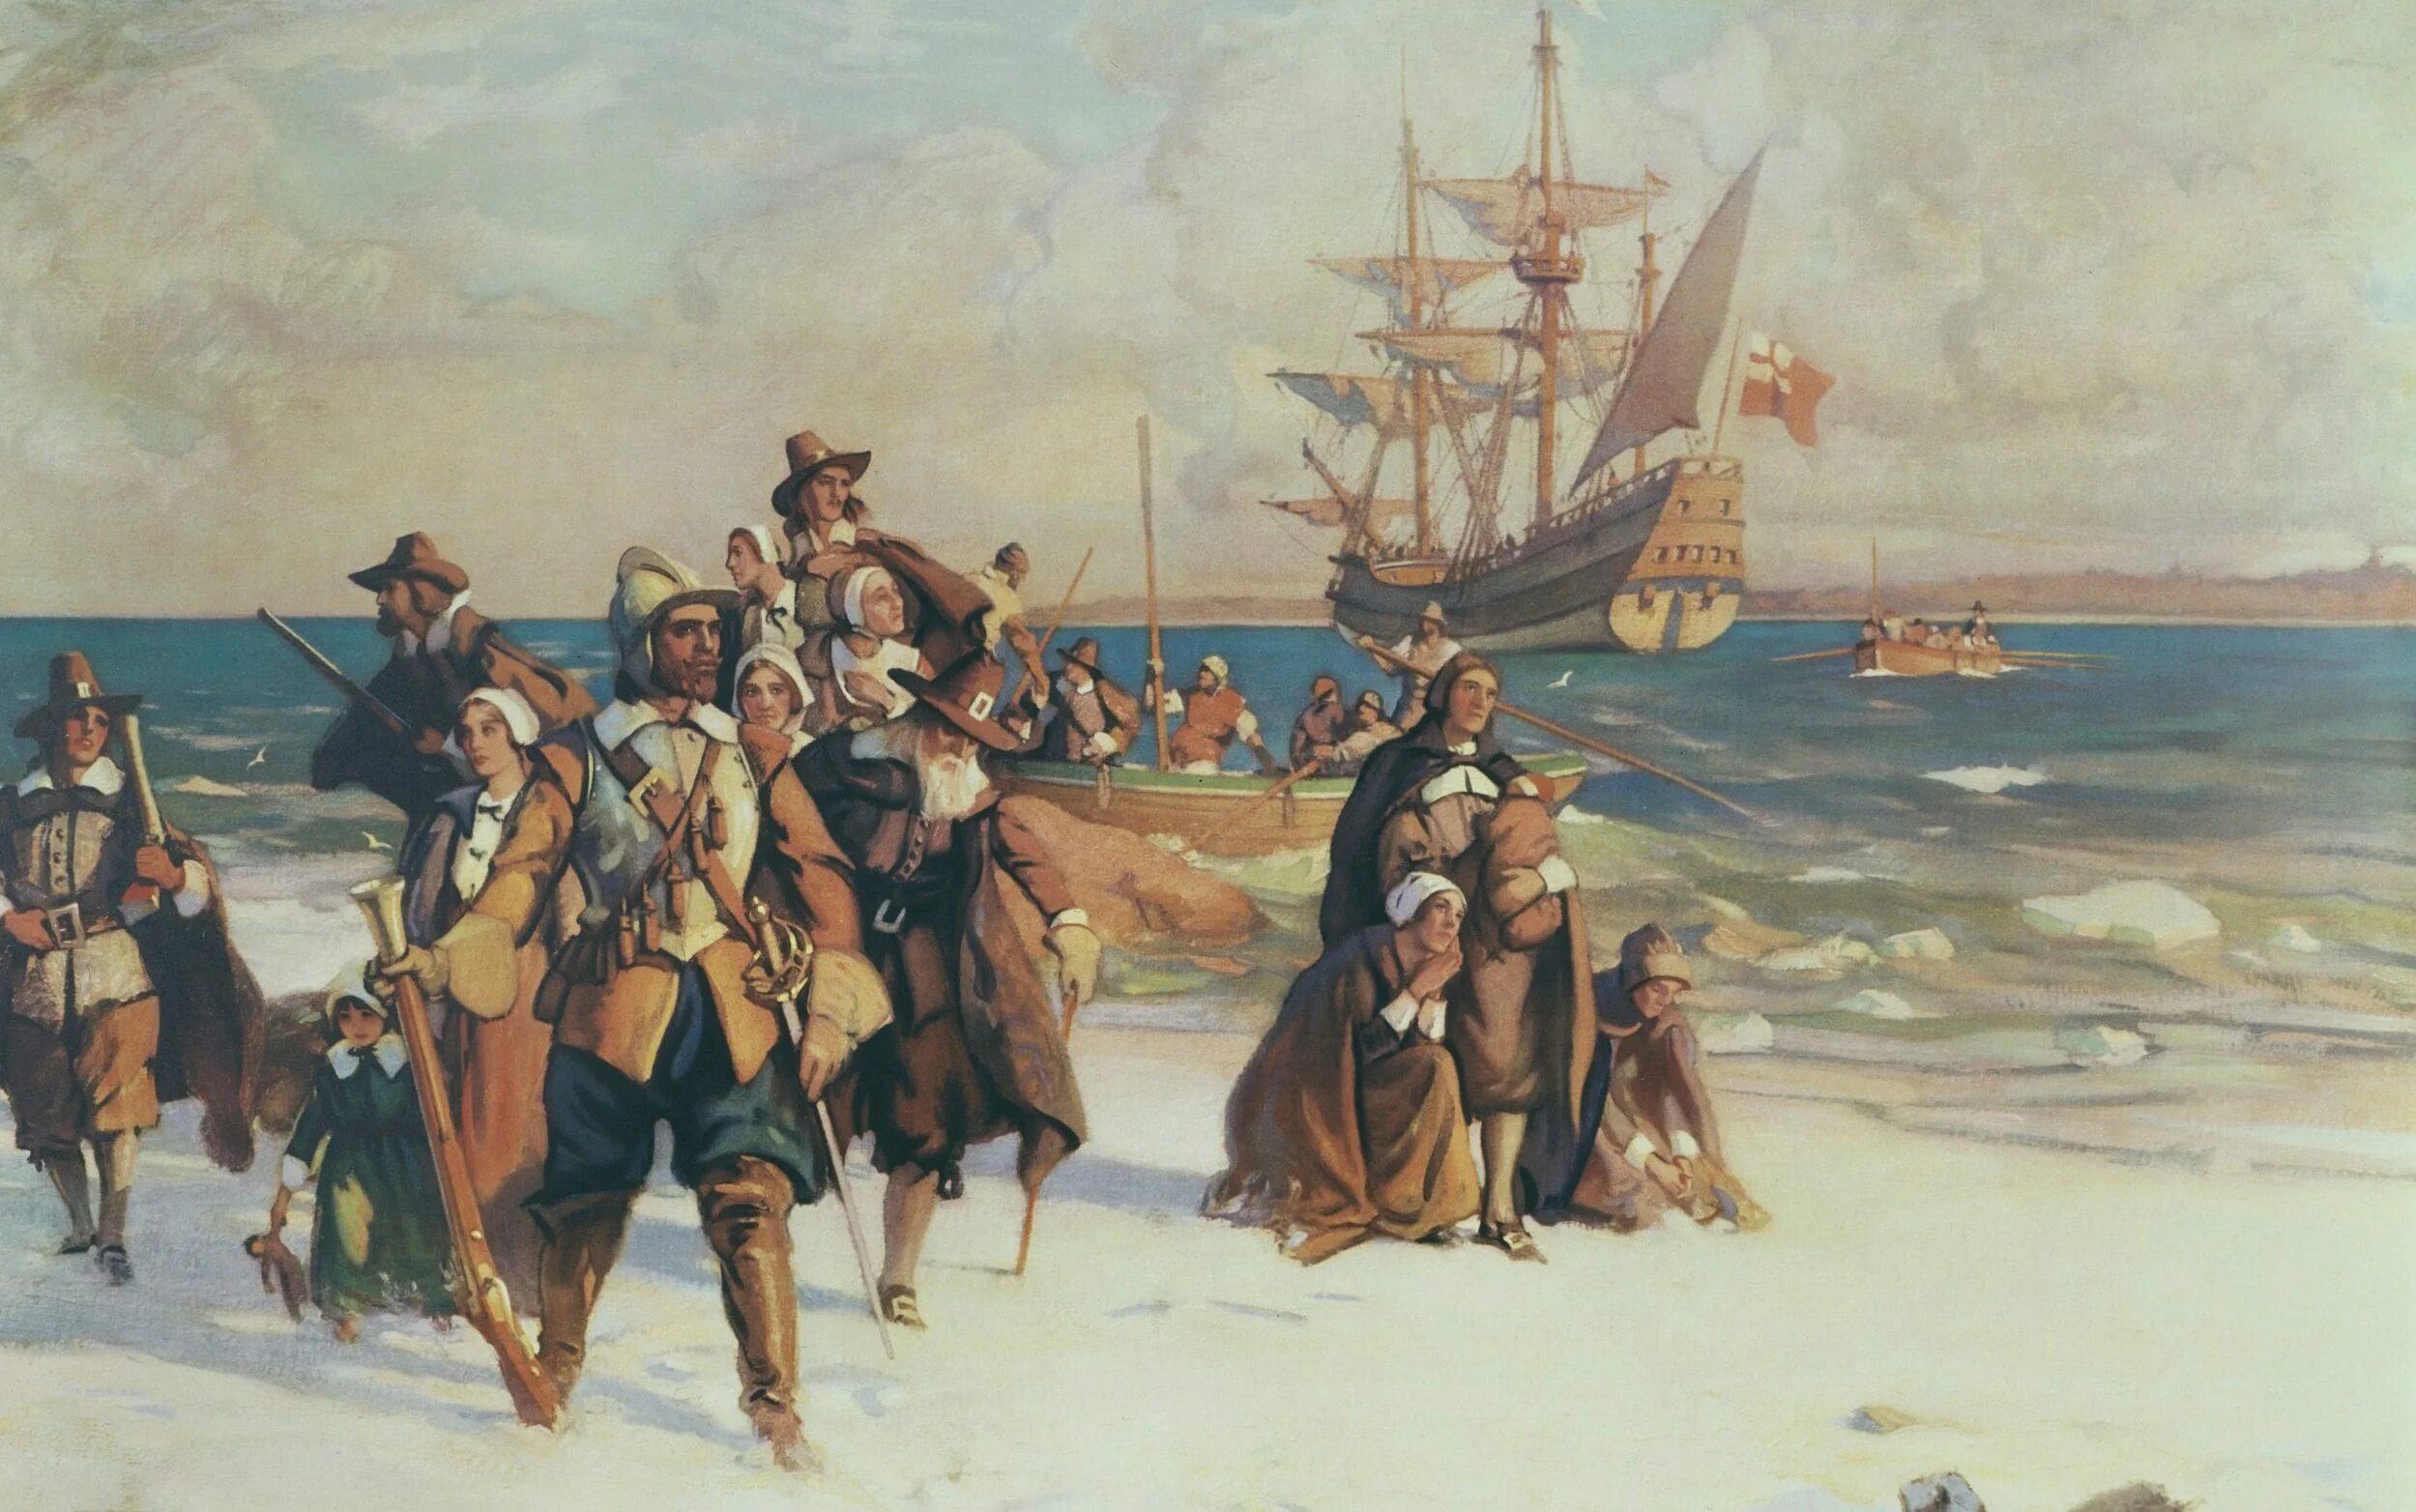 Первый пилигрим. Корабль Мэйфлауэр 1620. Мэйфлауэр корабль 1620 год. 1620 Мэйфлауэр отцы Пилигримы. Корабль Mayflower первые поселенцы в Америке.